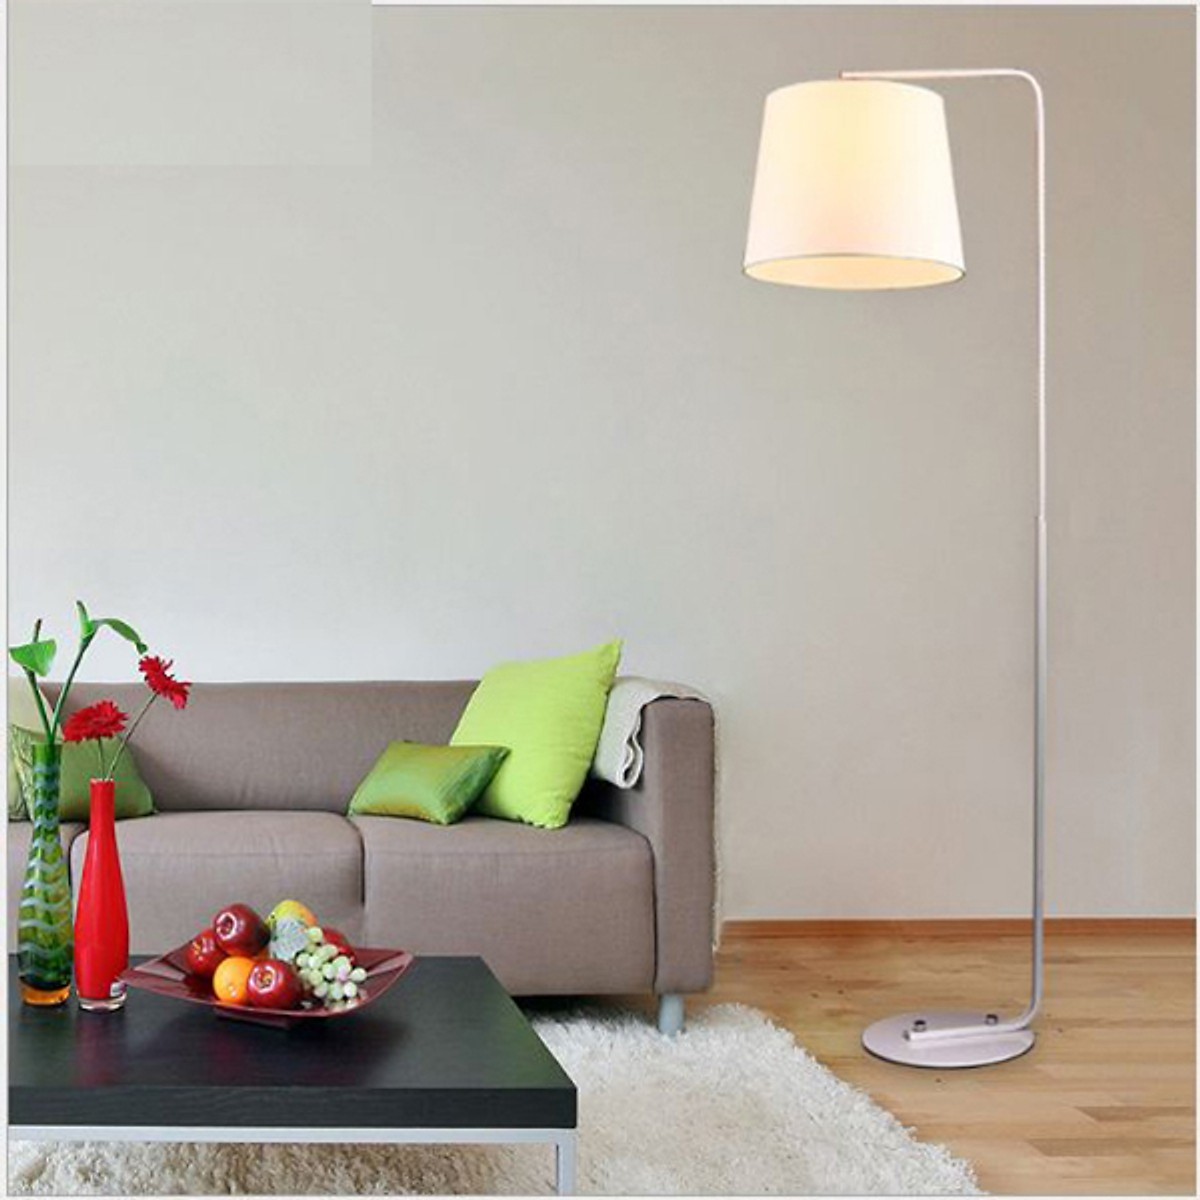 Đèn sàn - đèn đứng - đèn trang trí phòng khách - đèn sofa cao cấp DC9005